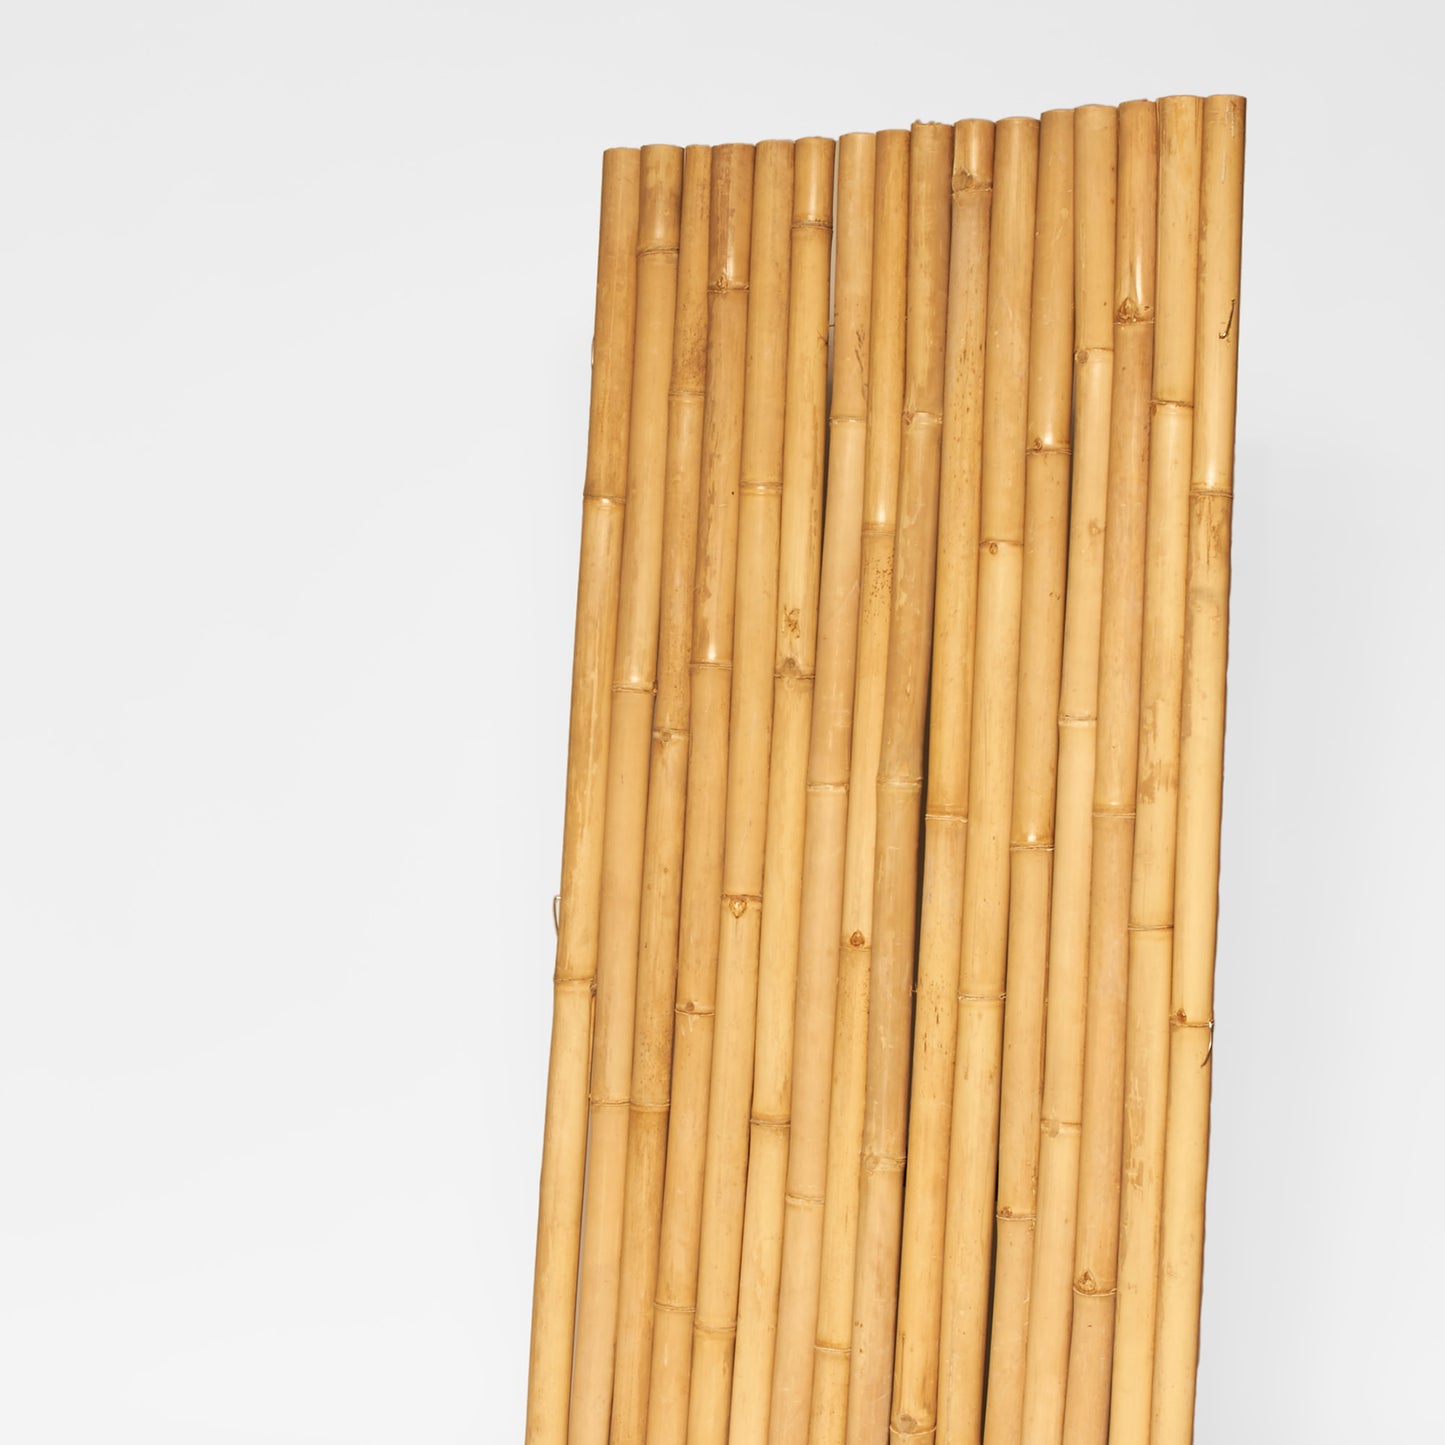 Helle Bambus-Rollmatte / Sichtschutz / Wandverkleidung mit Edelstahl oder verzinktem Draht als Verbund - Produktfoto